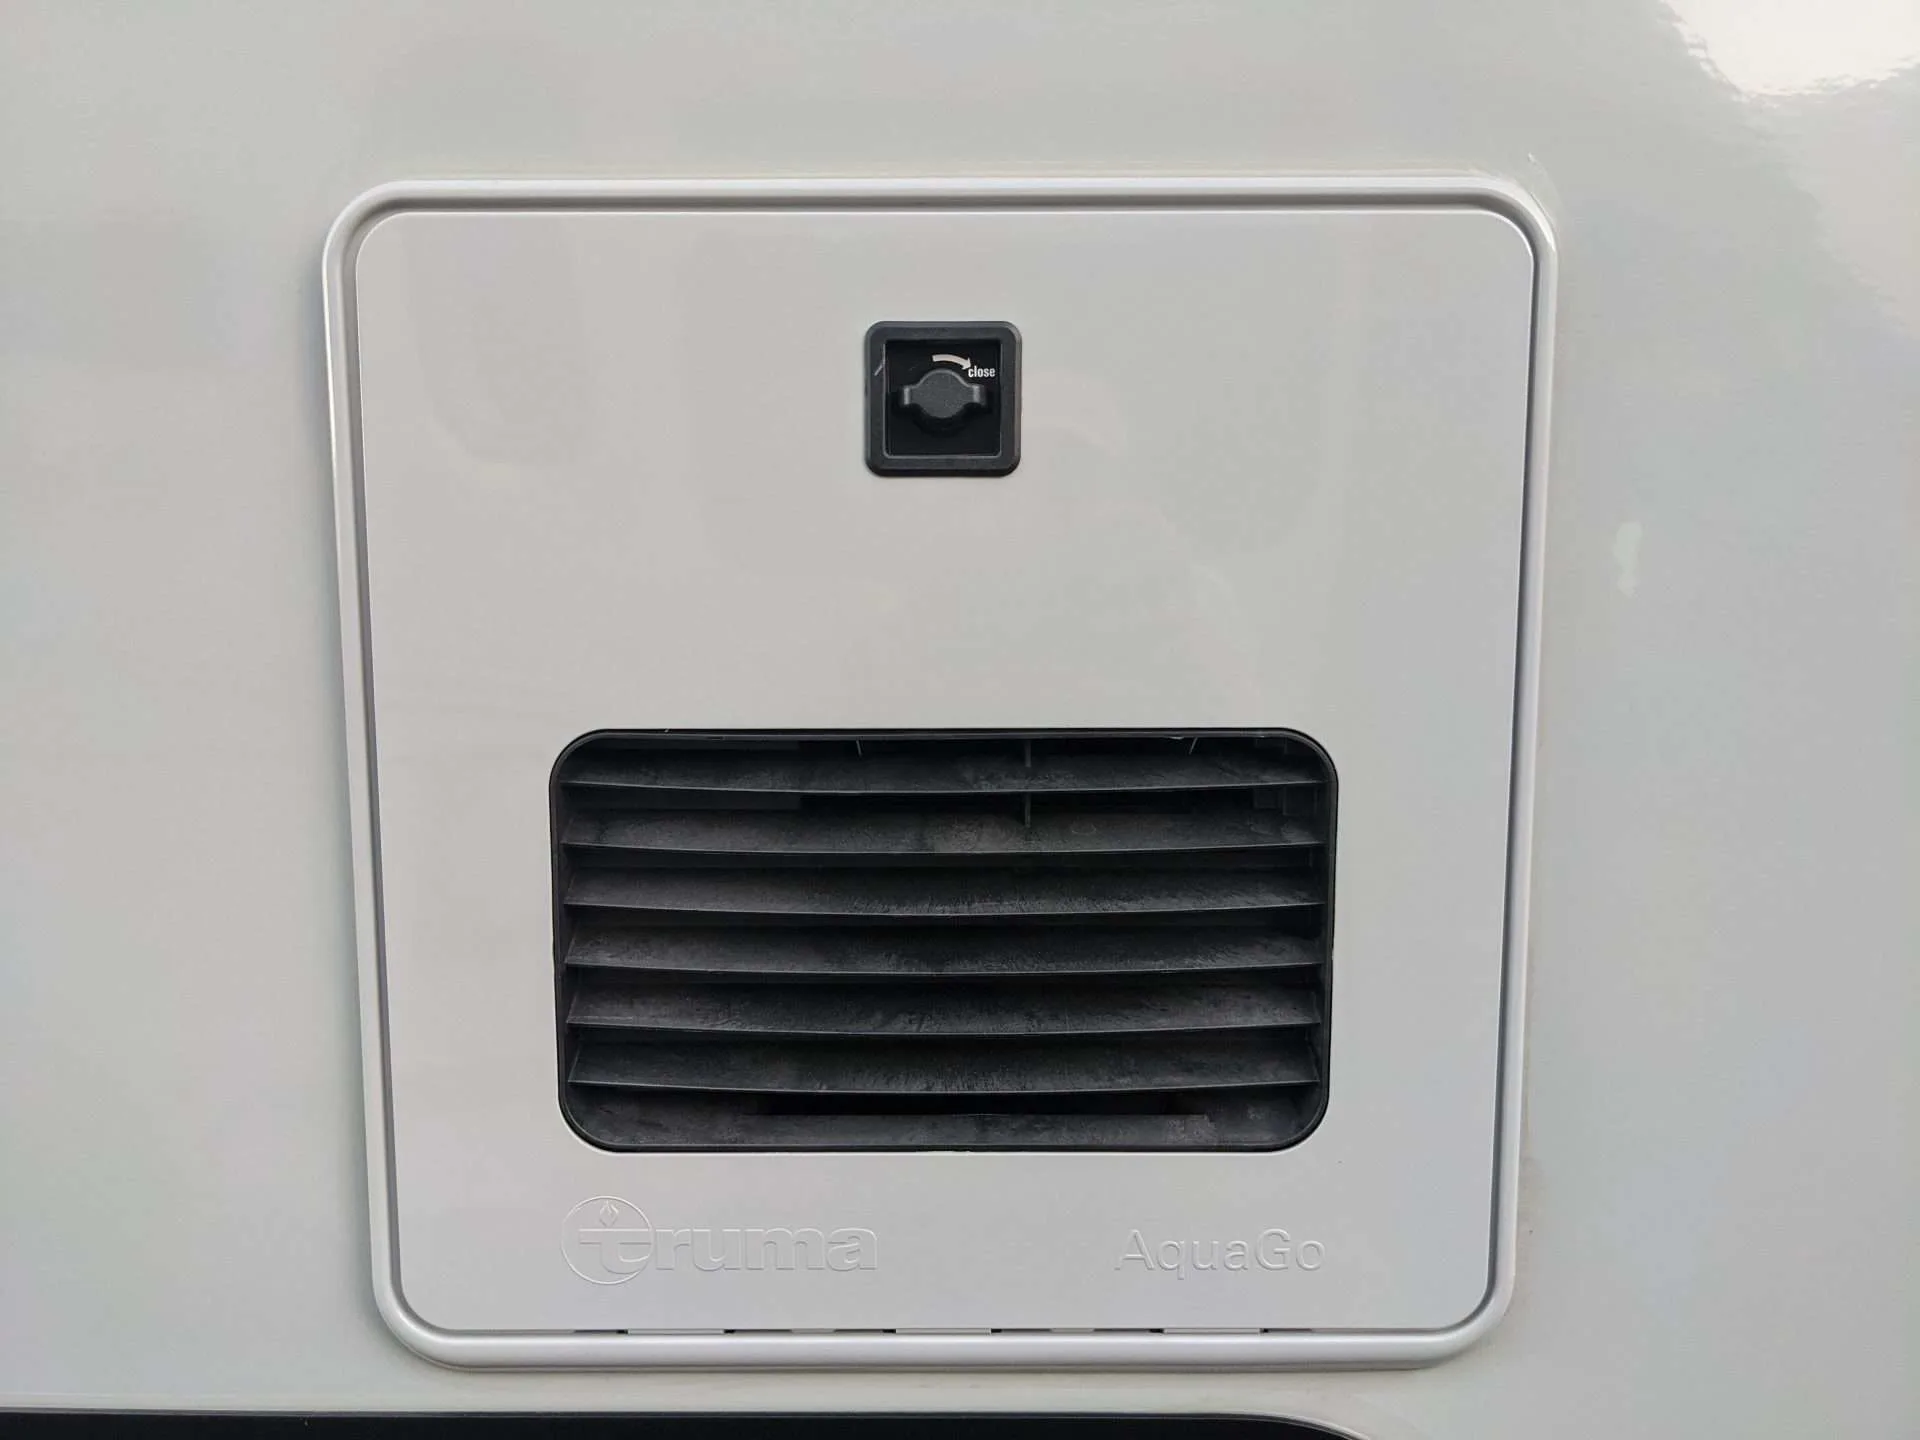 Truma AquaGo RV water heater access panel